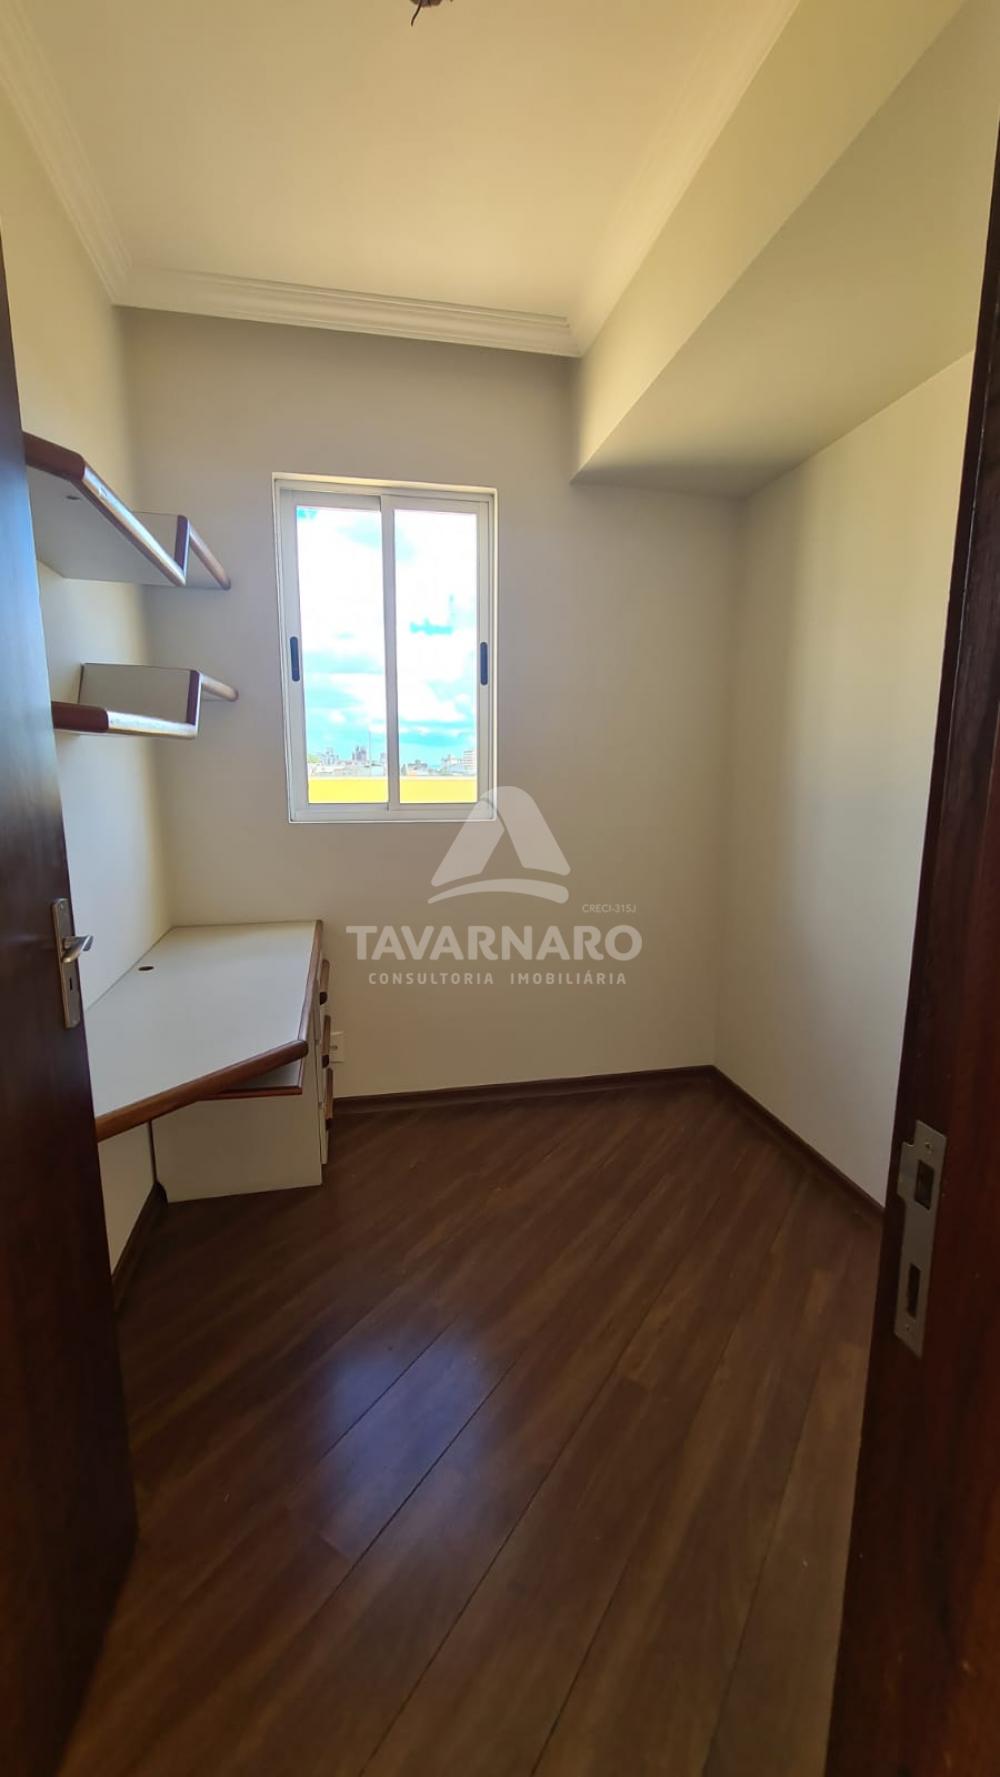 Comprar Apartamento / Cobertura em Ponta Grossa R$ 550.000,00 - Foto 5